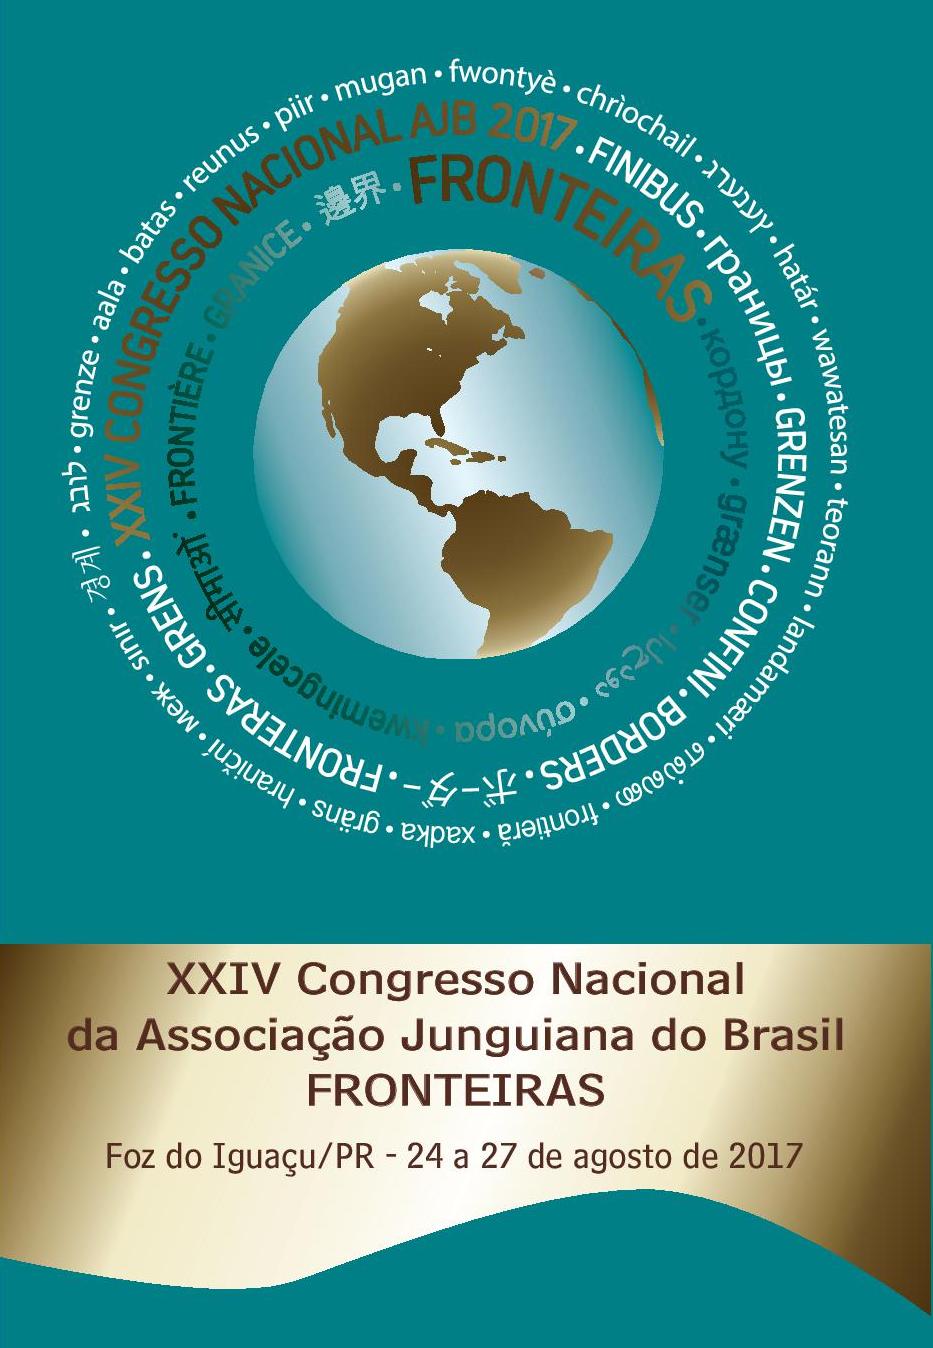 XXIV Congresso da Associação Junguiana do Brasil – Fronteiras